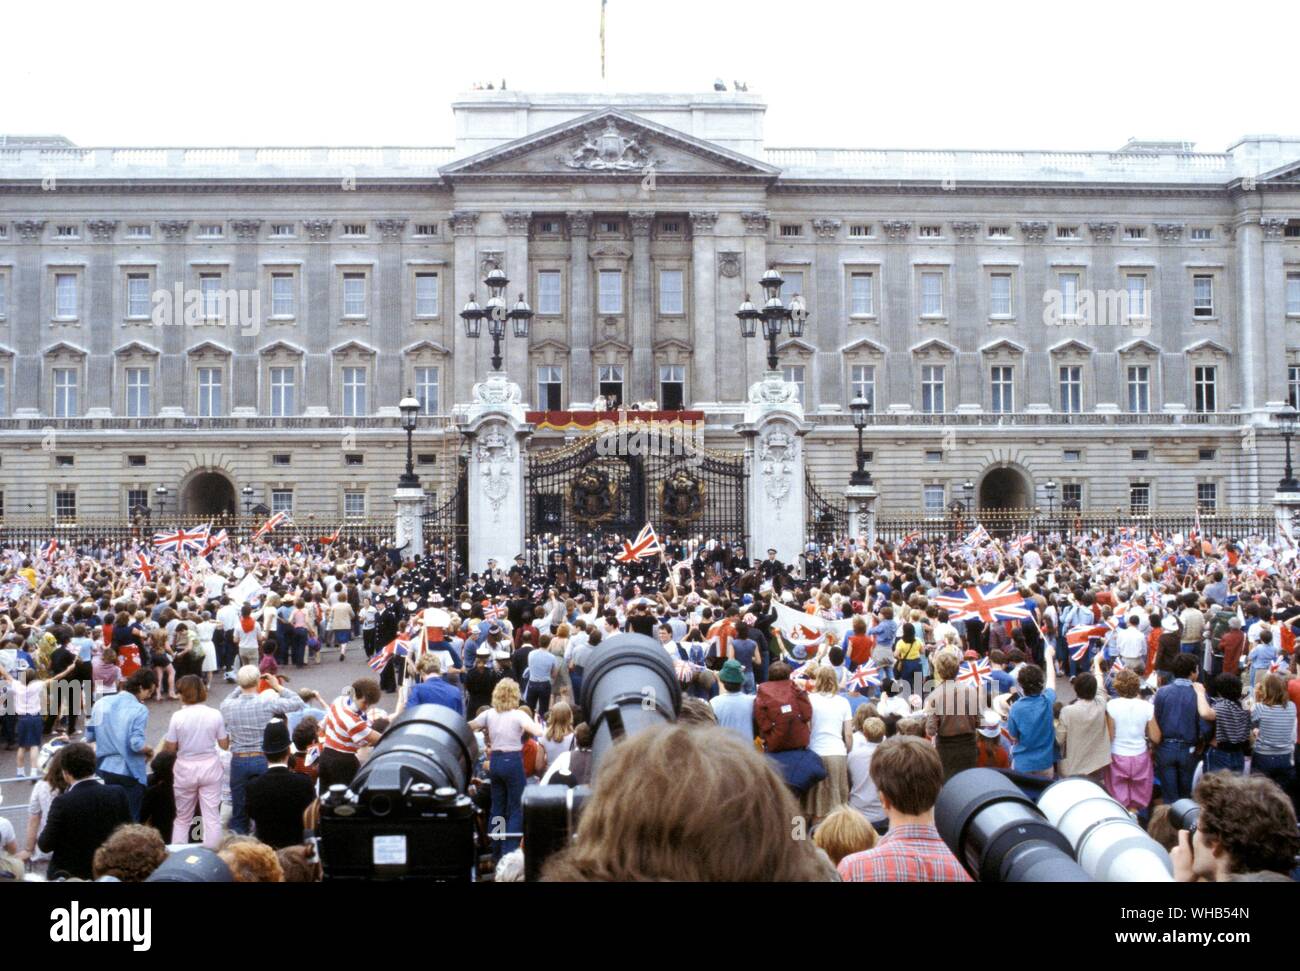 La Folla di wellwishers fuori Buckingham Palace per vedere il principe Charles e Lady Diana Spencer il giorno delle nozze il 29 luglio 1981. Foto Stock